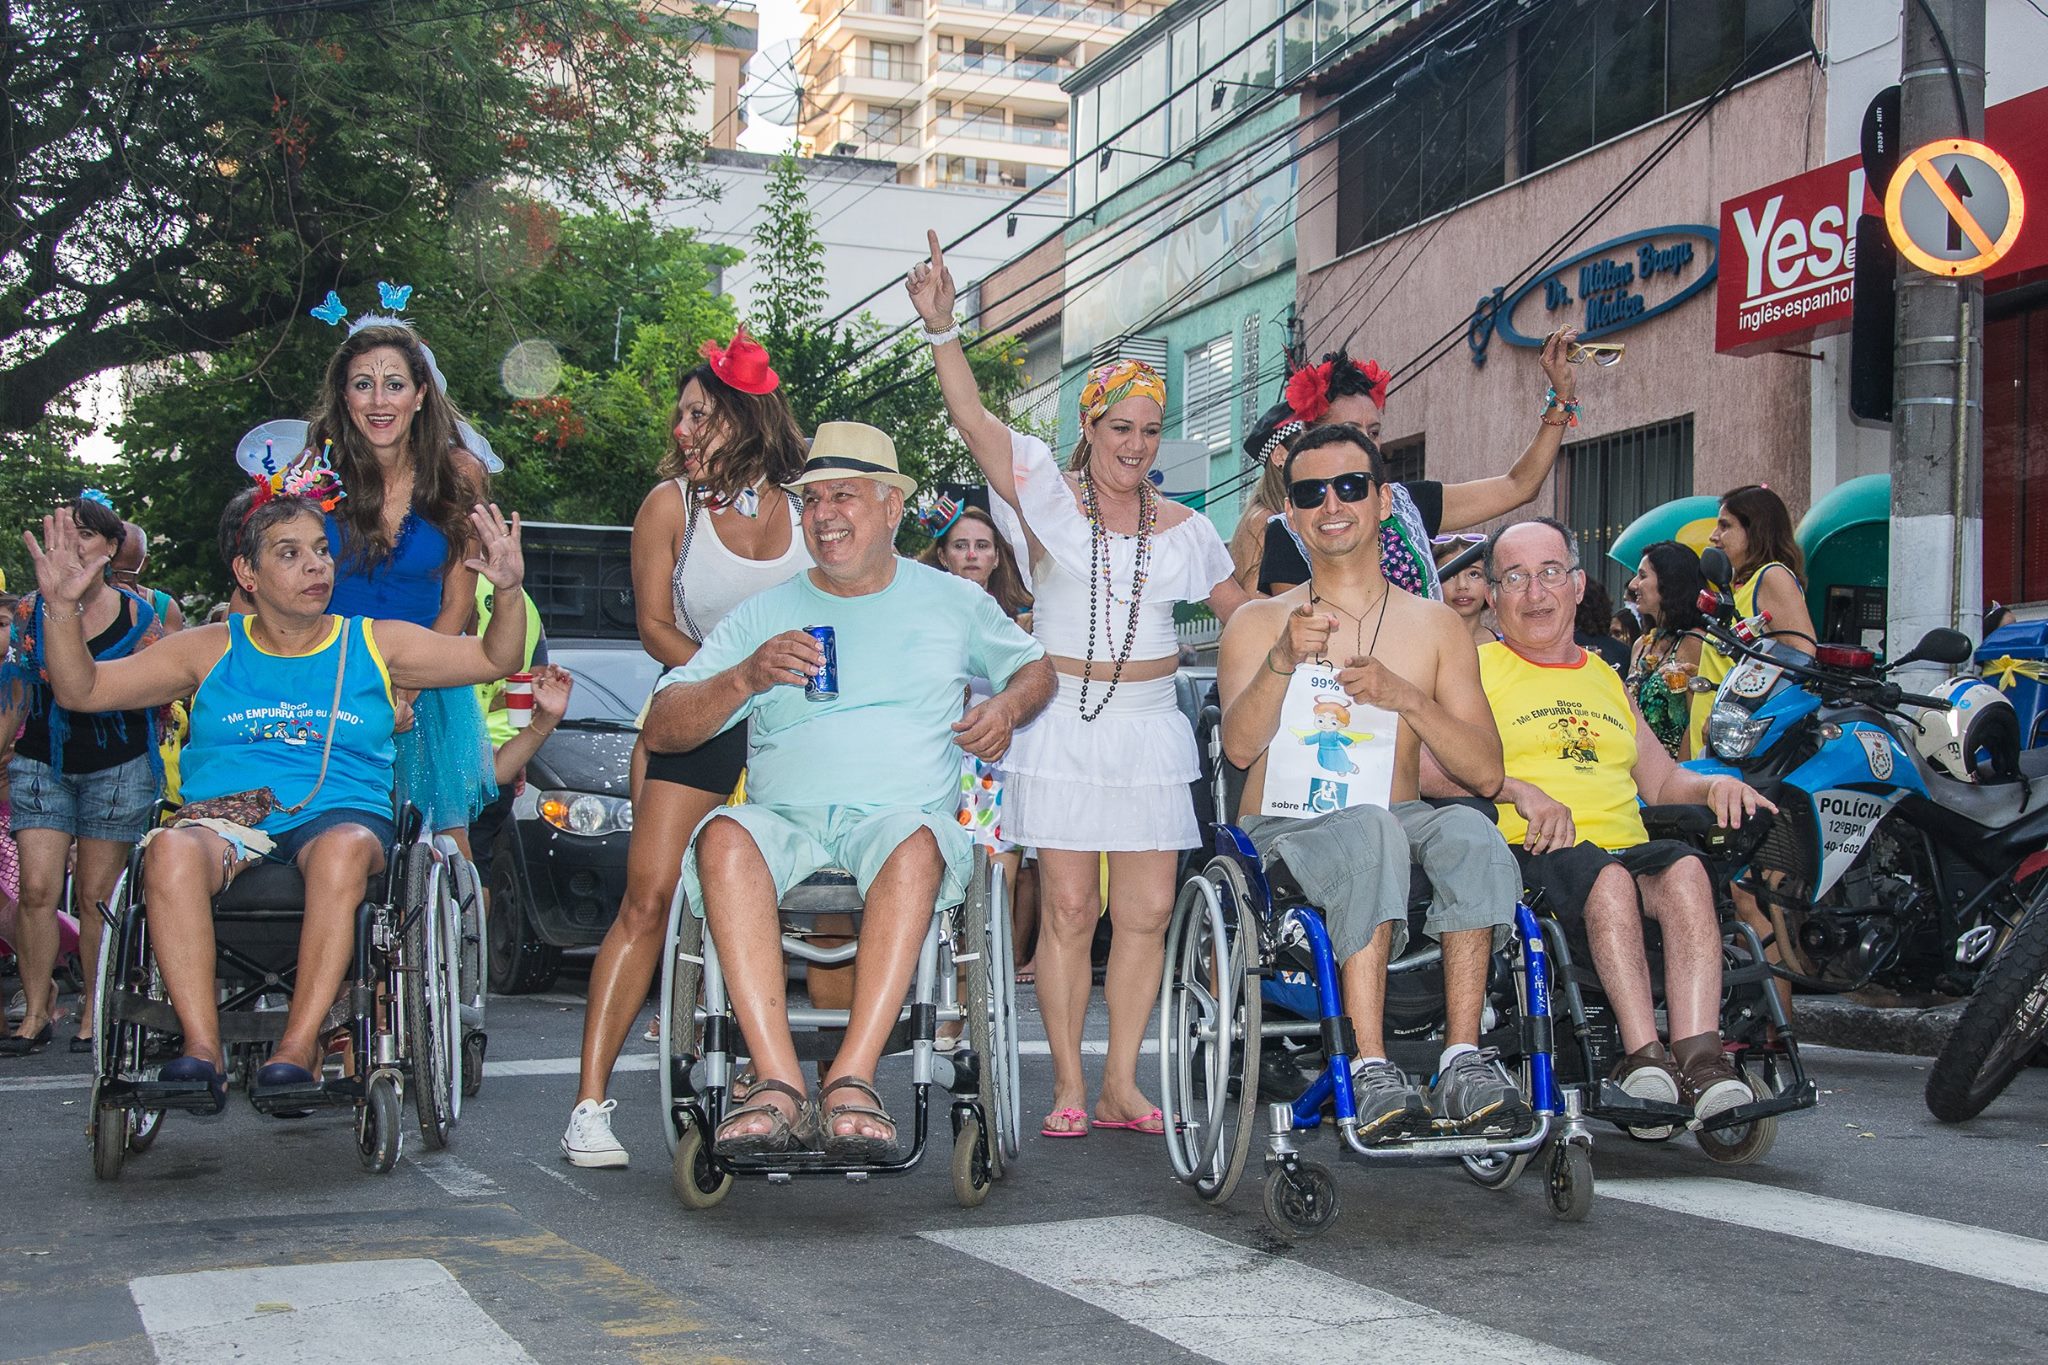 3 - Primeiro bloco da inclusão em Niterói desfilará nesse sábado (2)